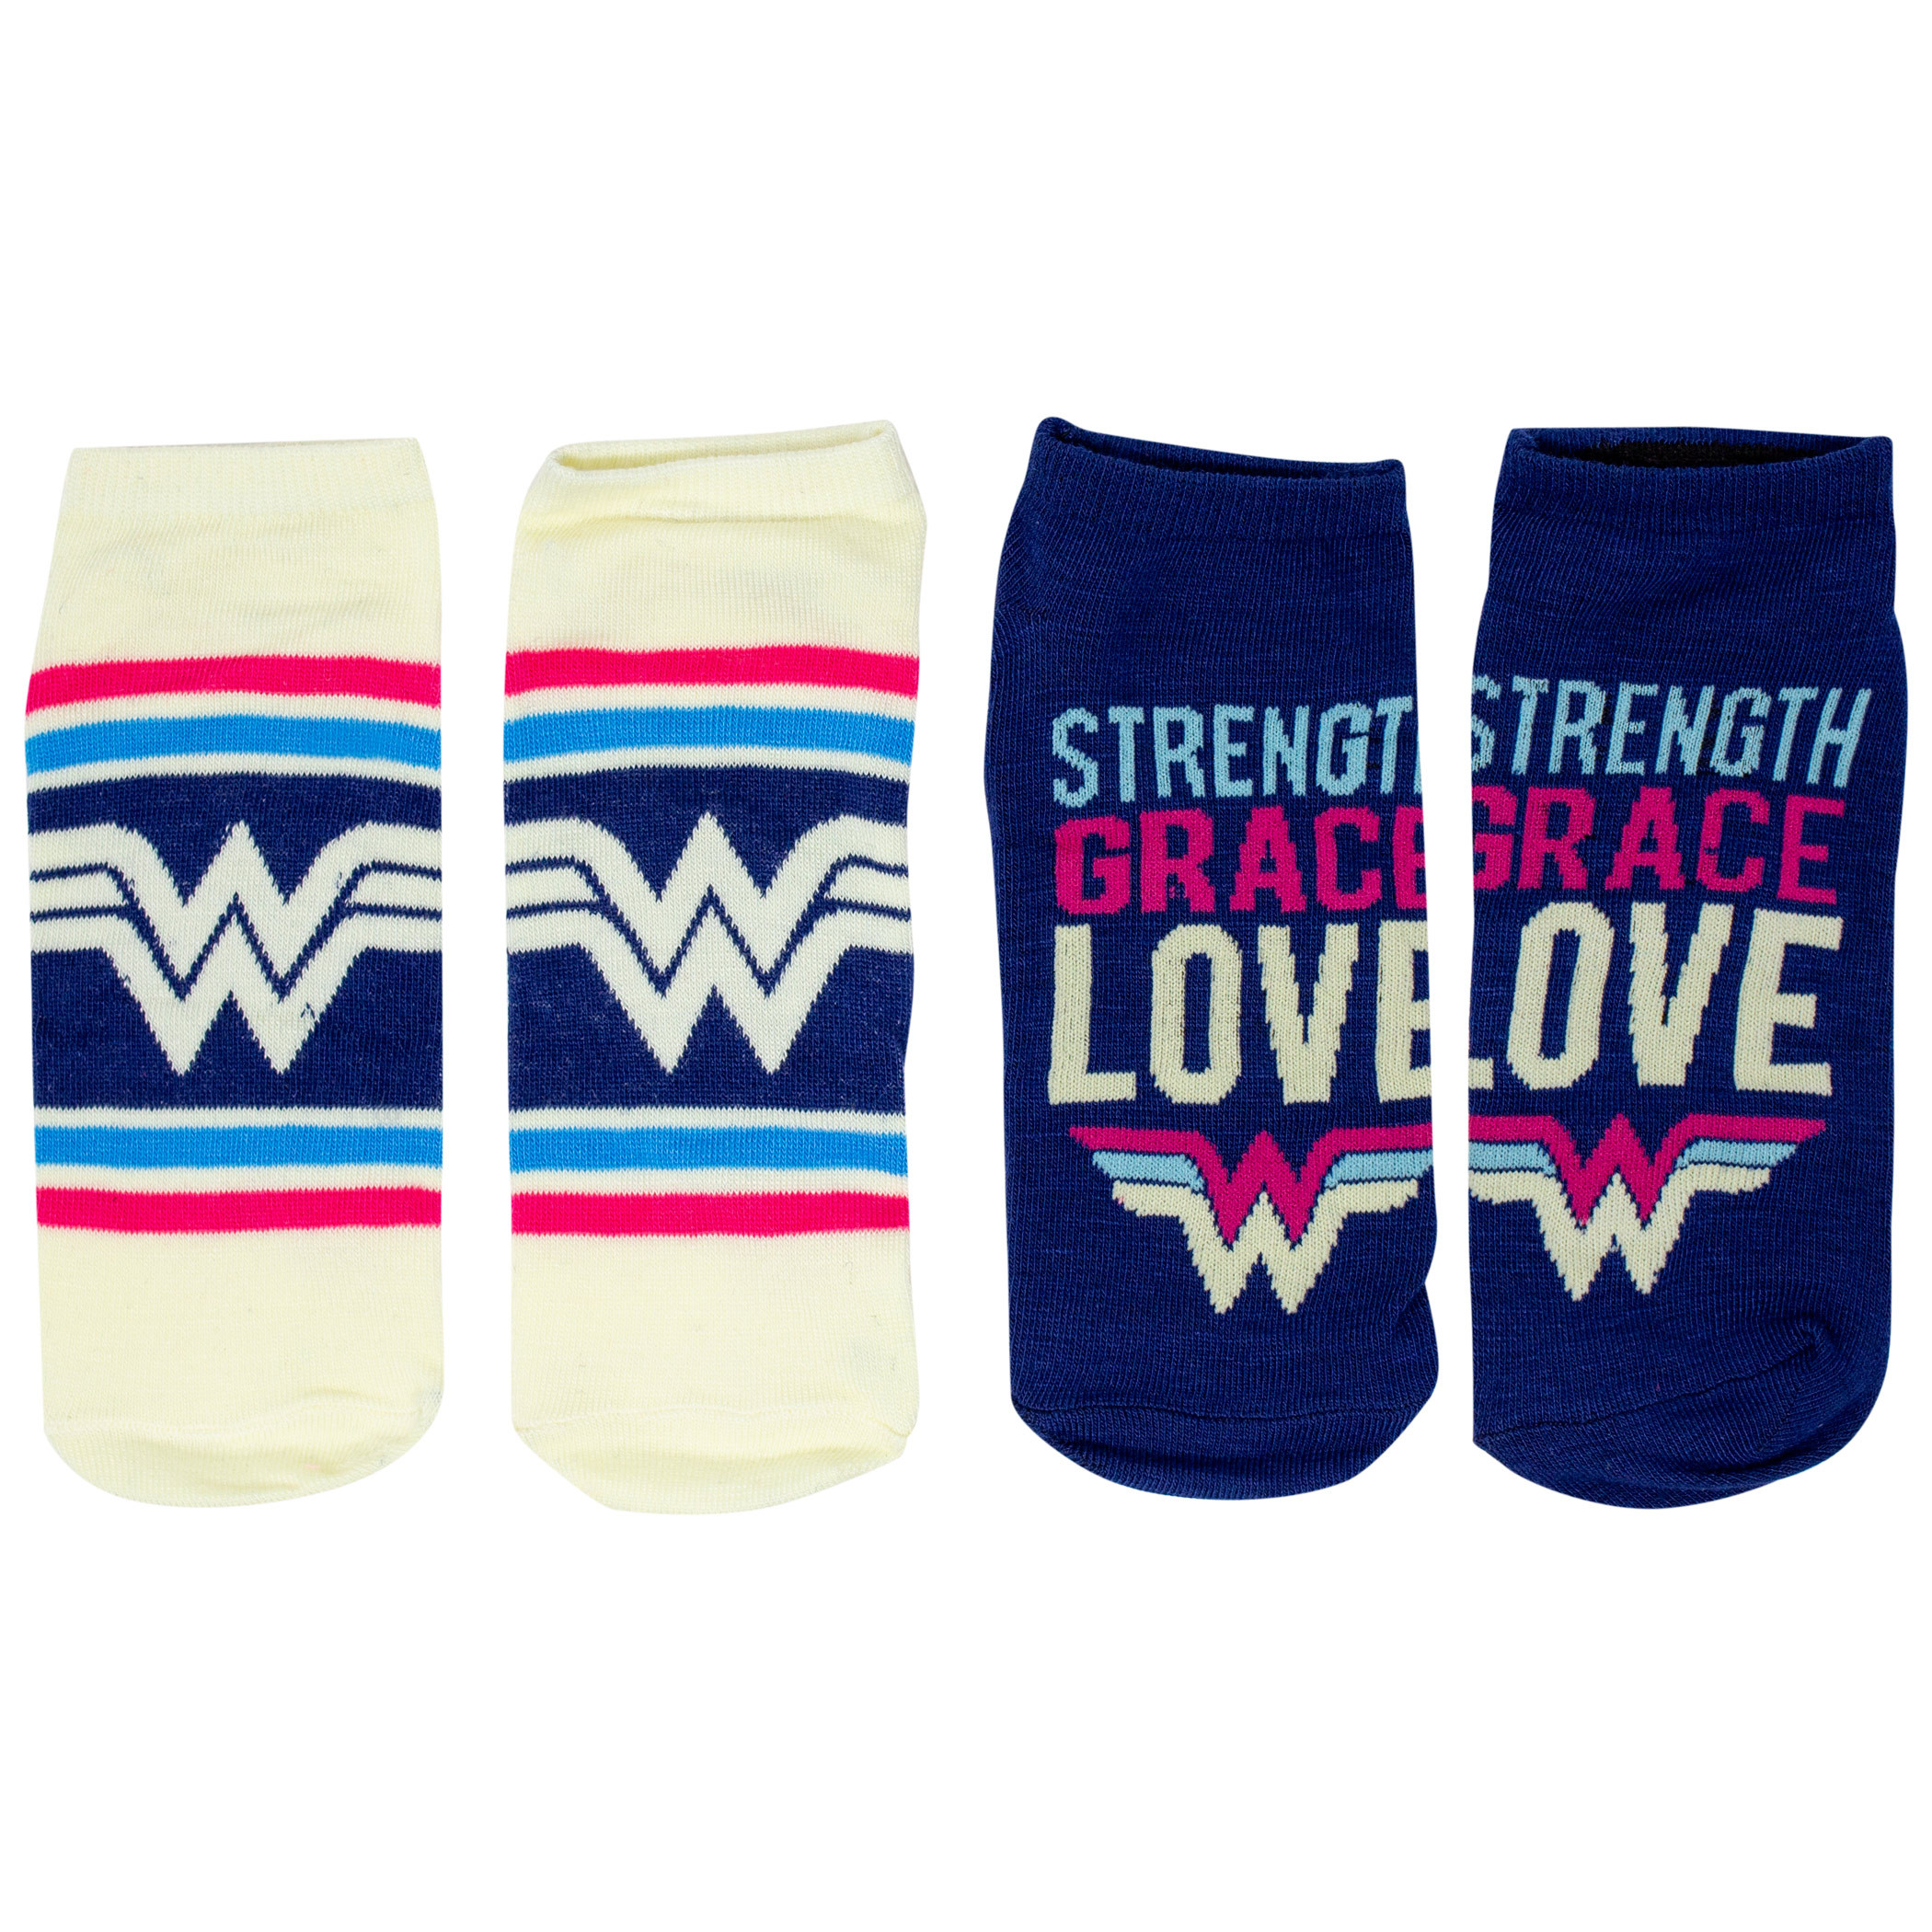 Wonder Woman Sock of the Week Assorted Women's Shorties Socks 7-Pair Box